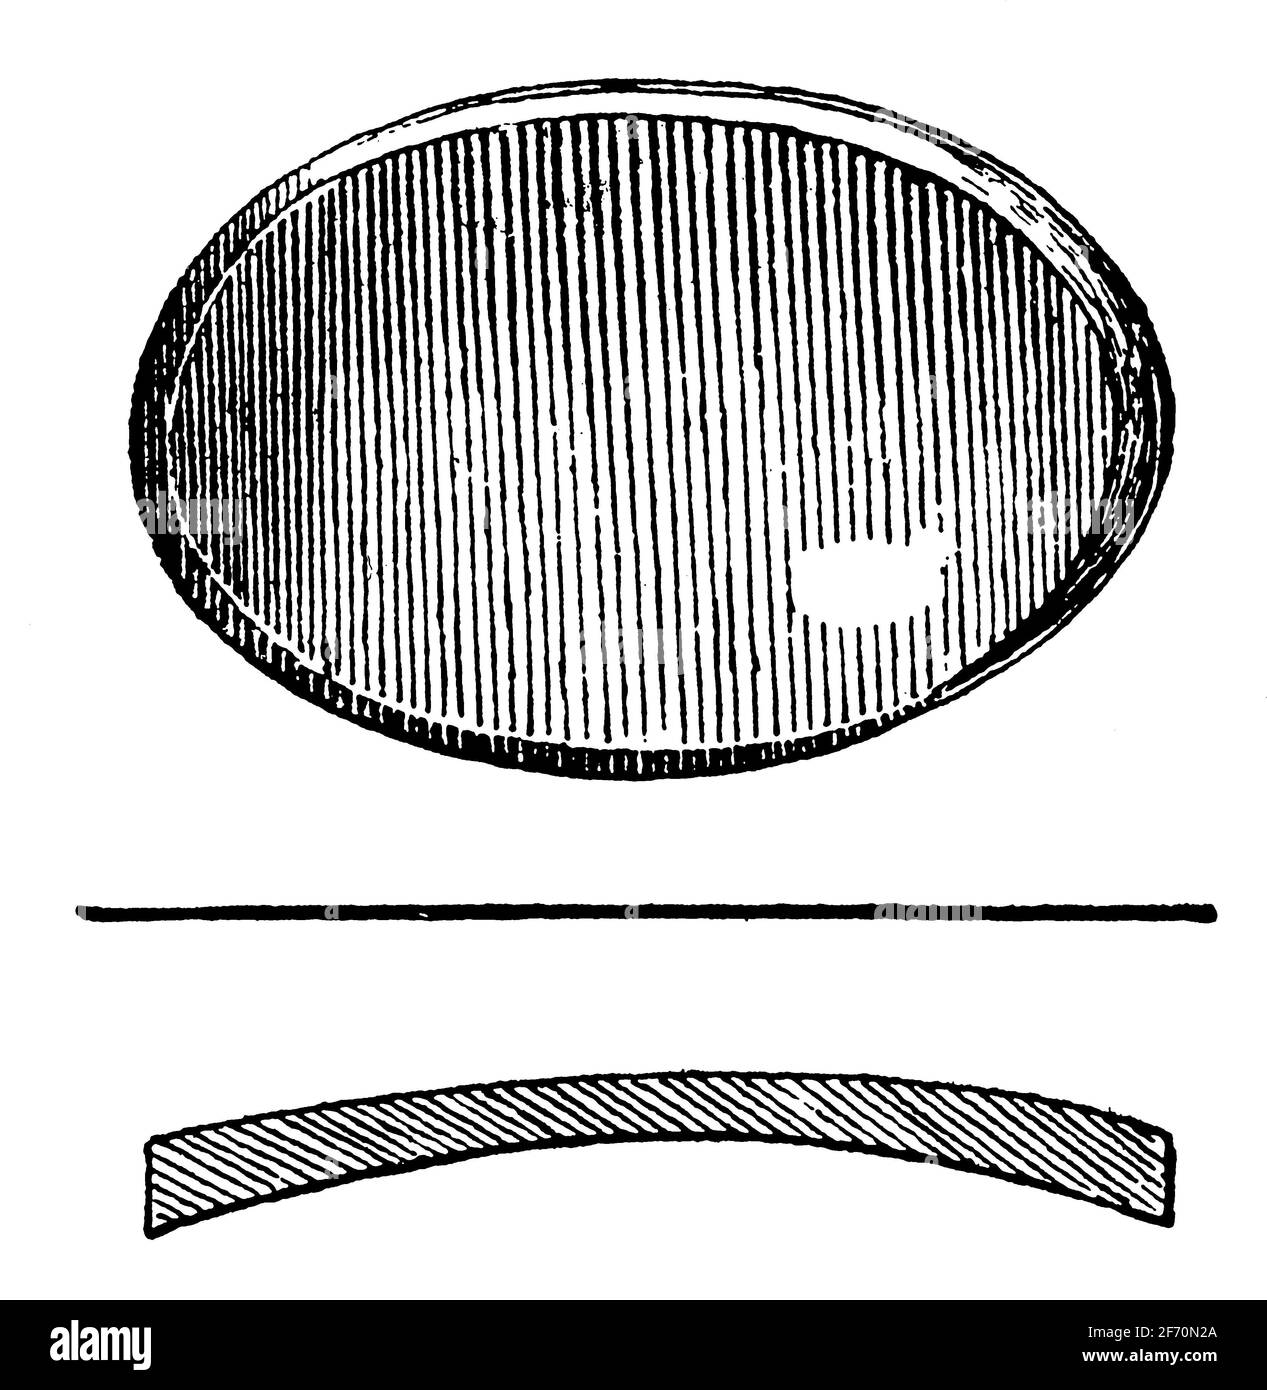 Lentille convexe concave (périscopique). Illustration du 19e siècle. Allemagne. Arrière-plan blanc. Banque D'Images